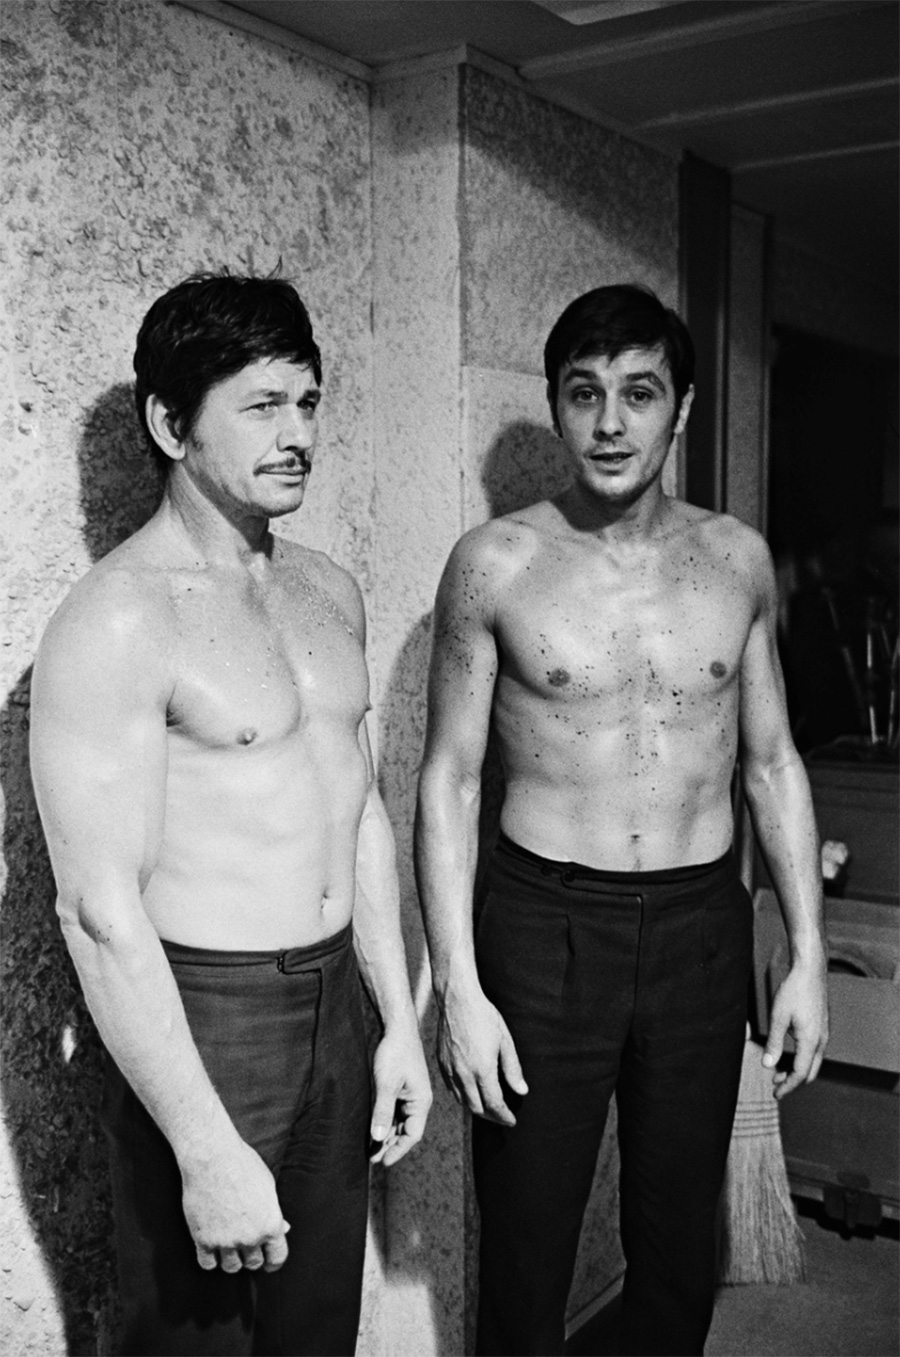 Alain Delon et Charles Bronson dans le film "Adieu l'ami" - 1968 © Photo sous Copyright